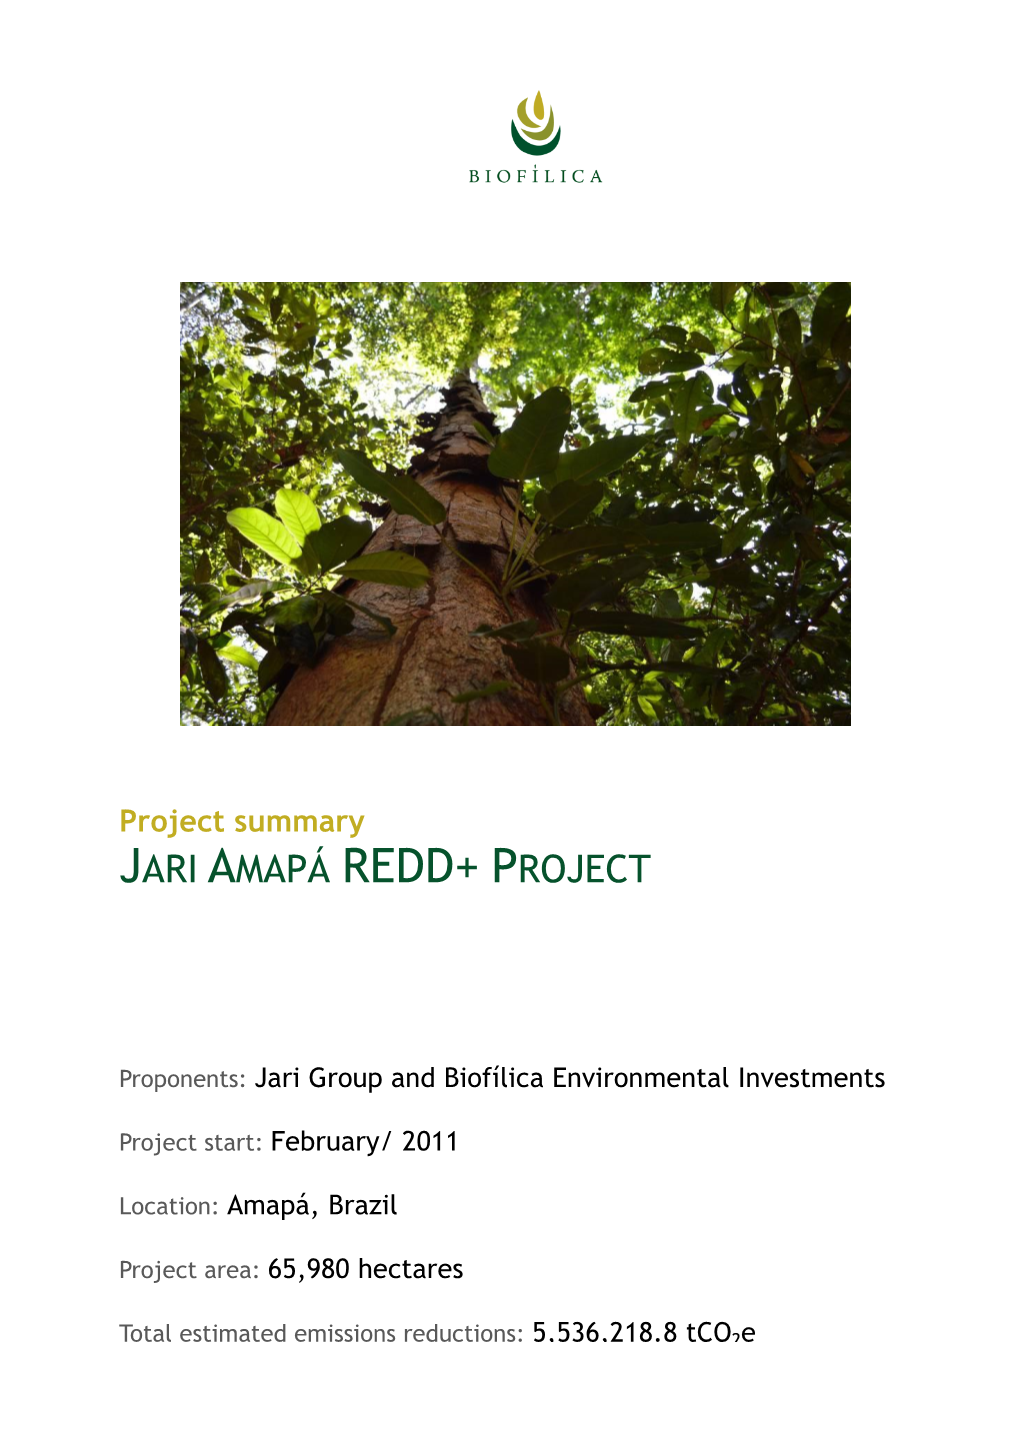 Jari Amapá Redd+ Project